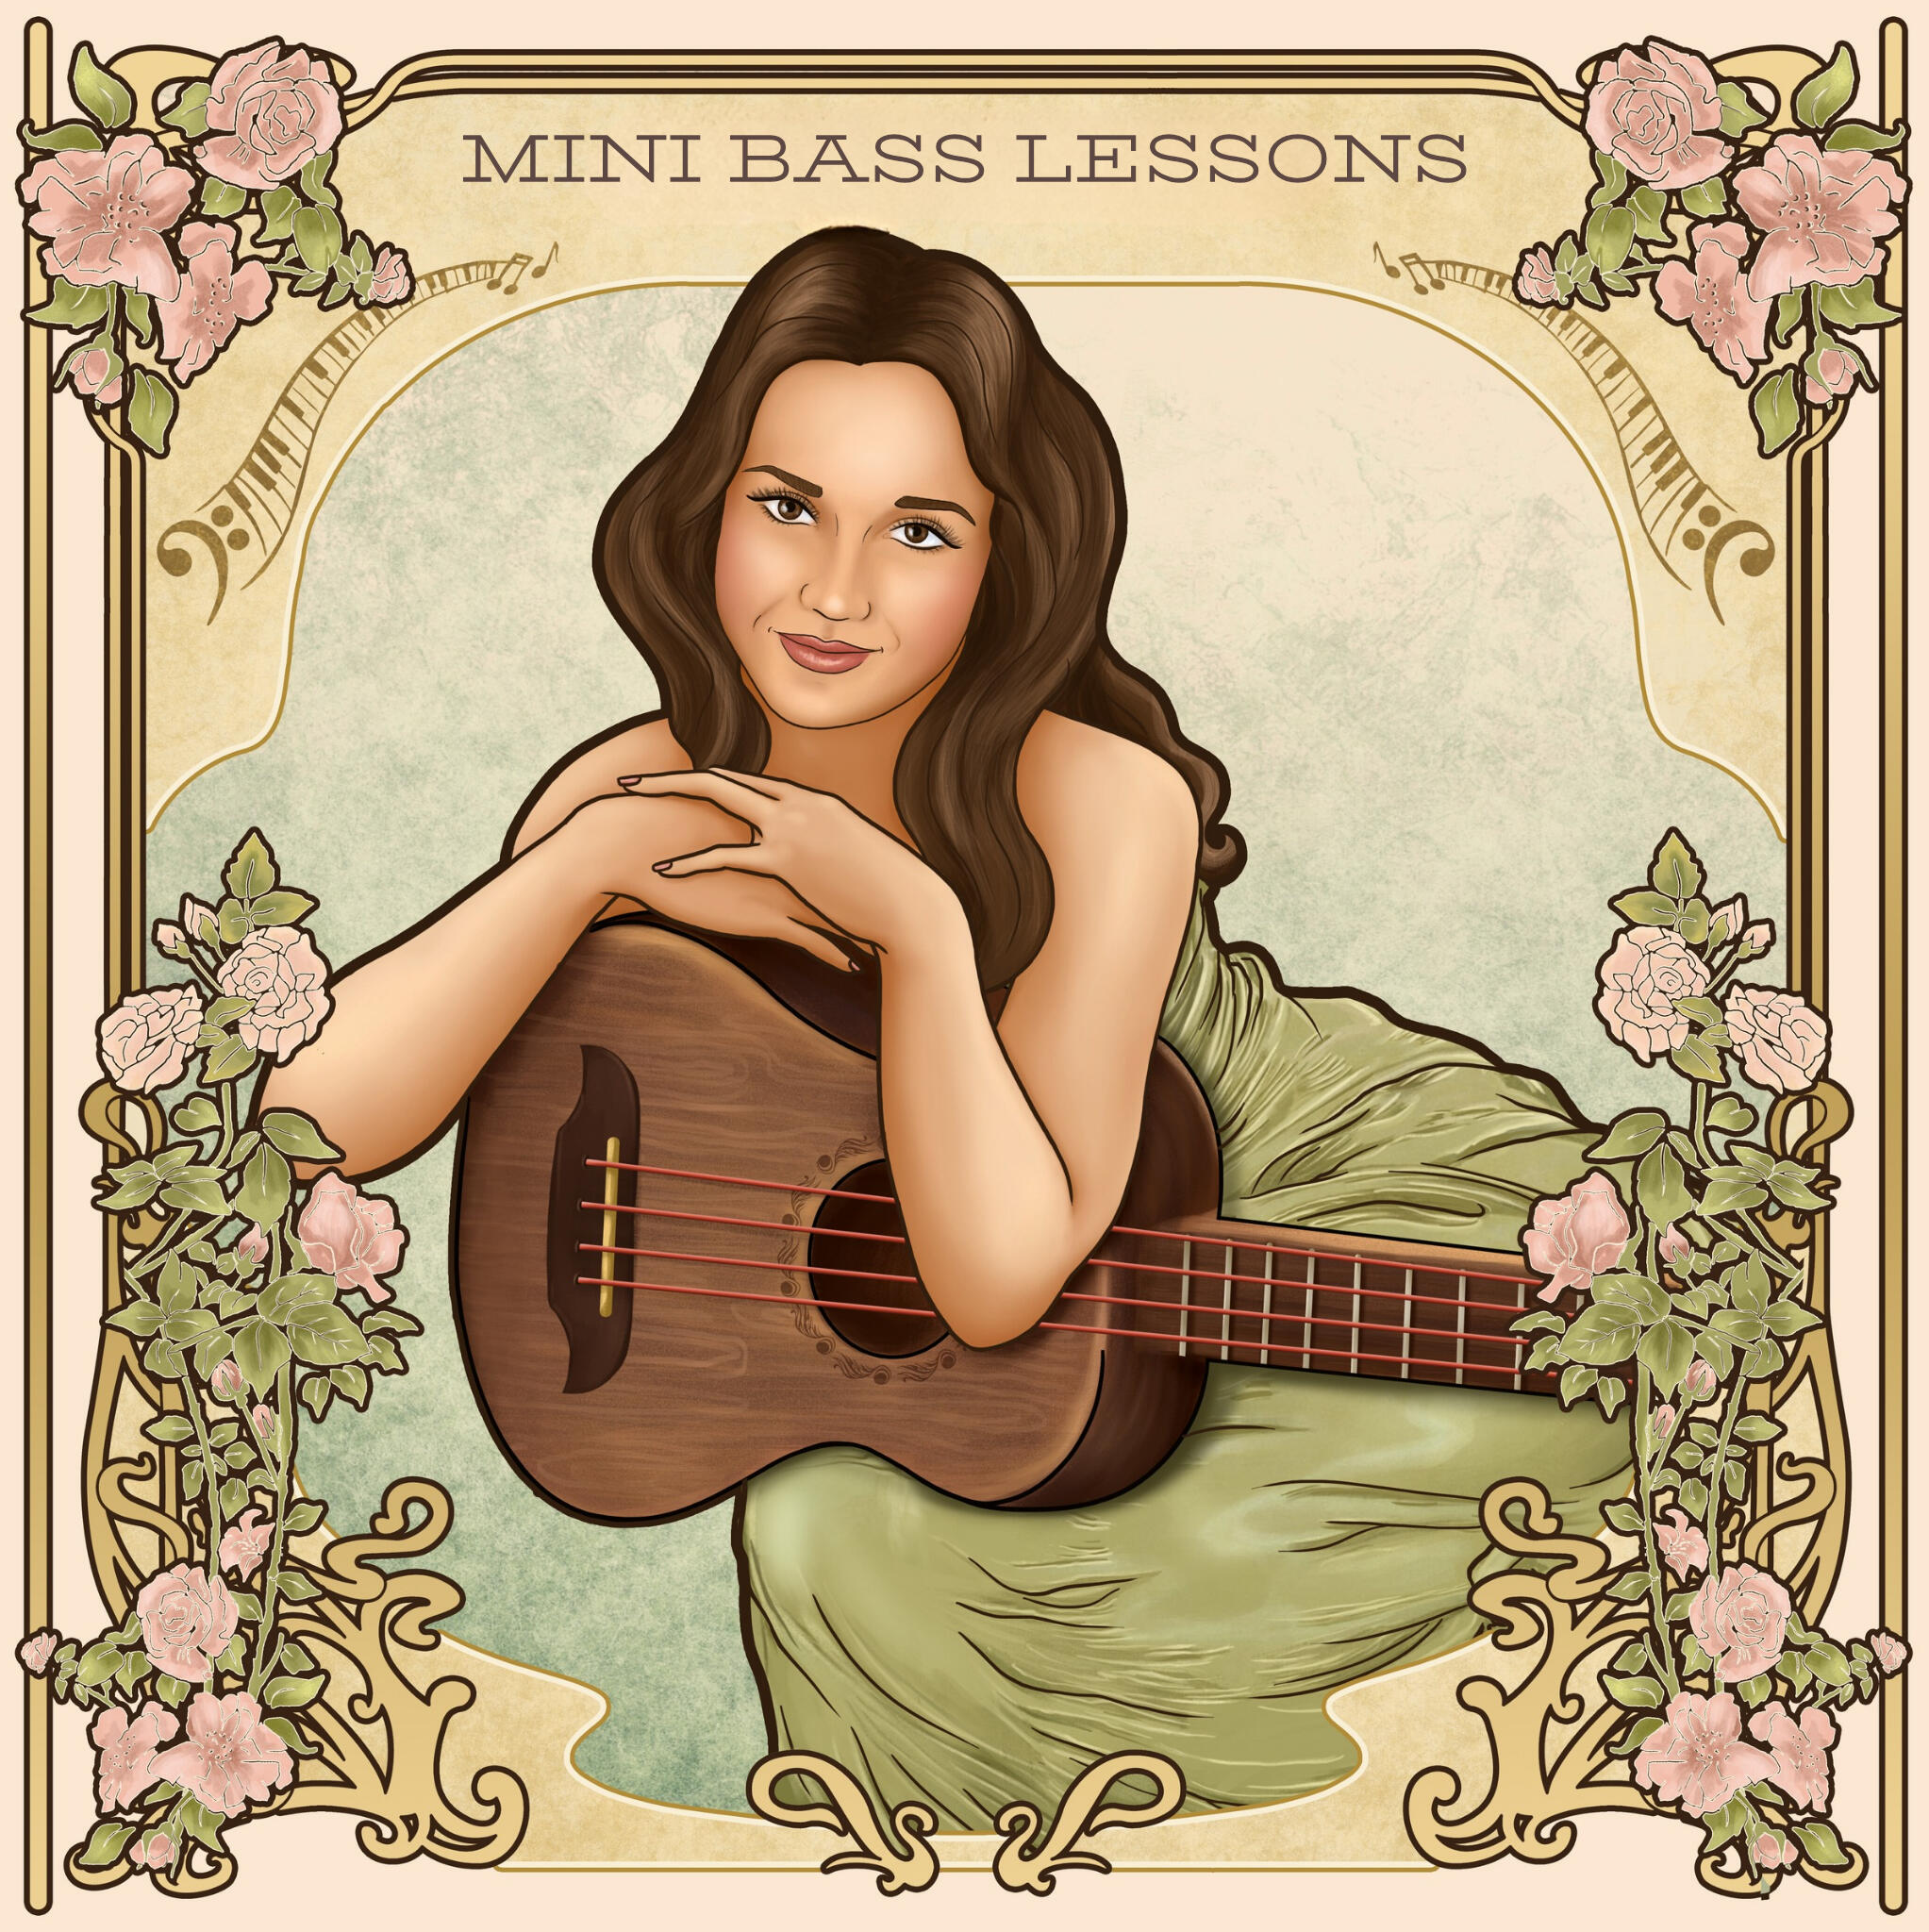 Mini Bass Lessons